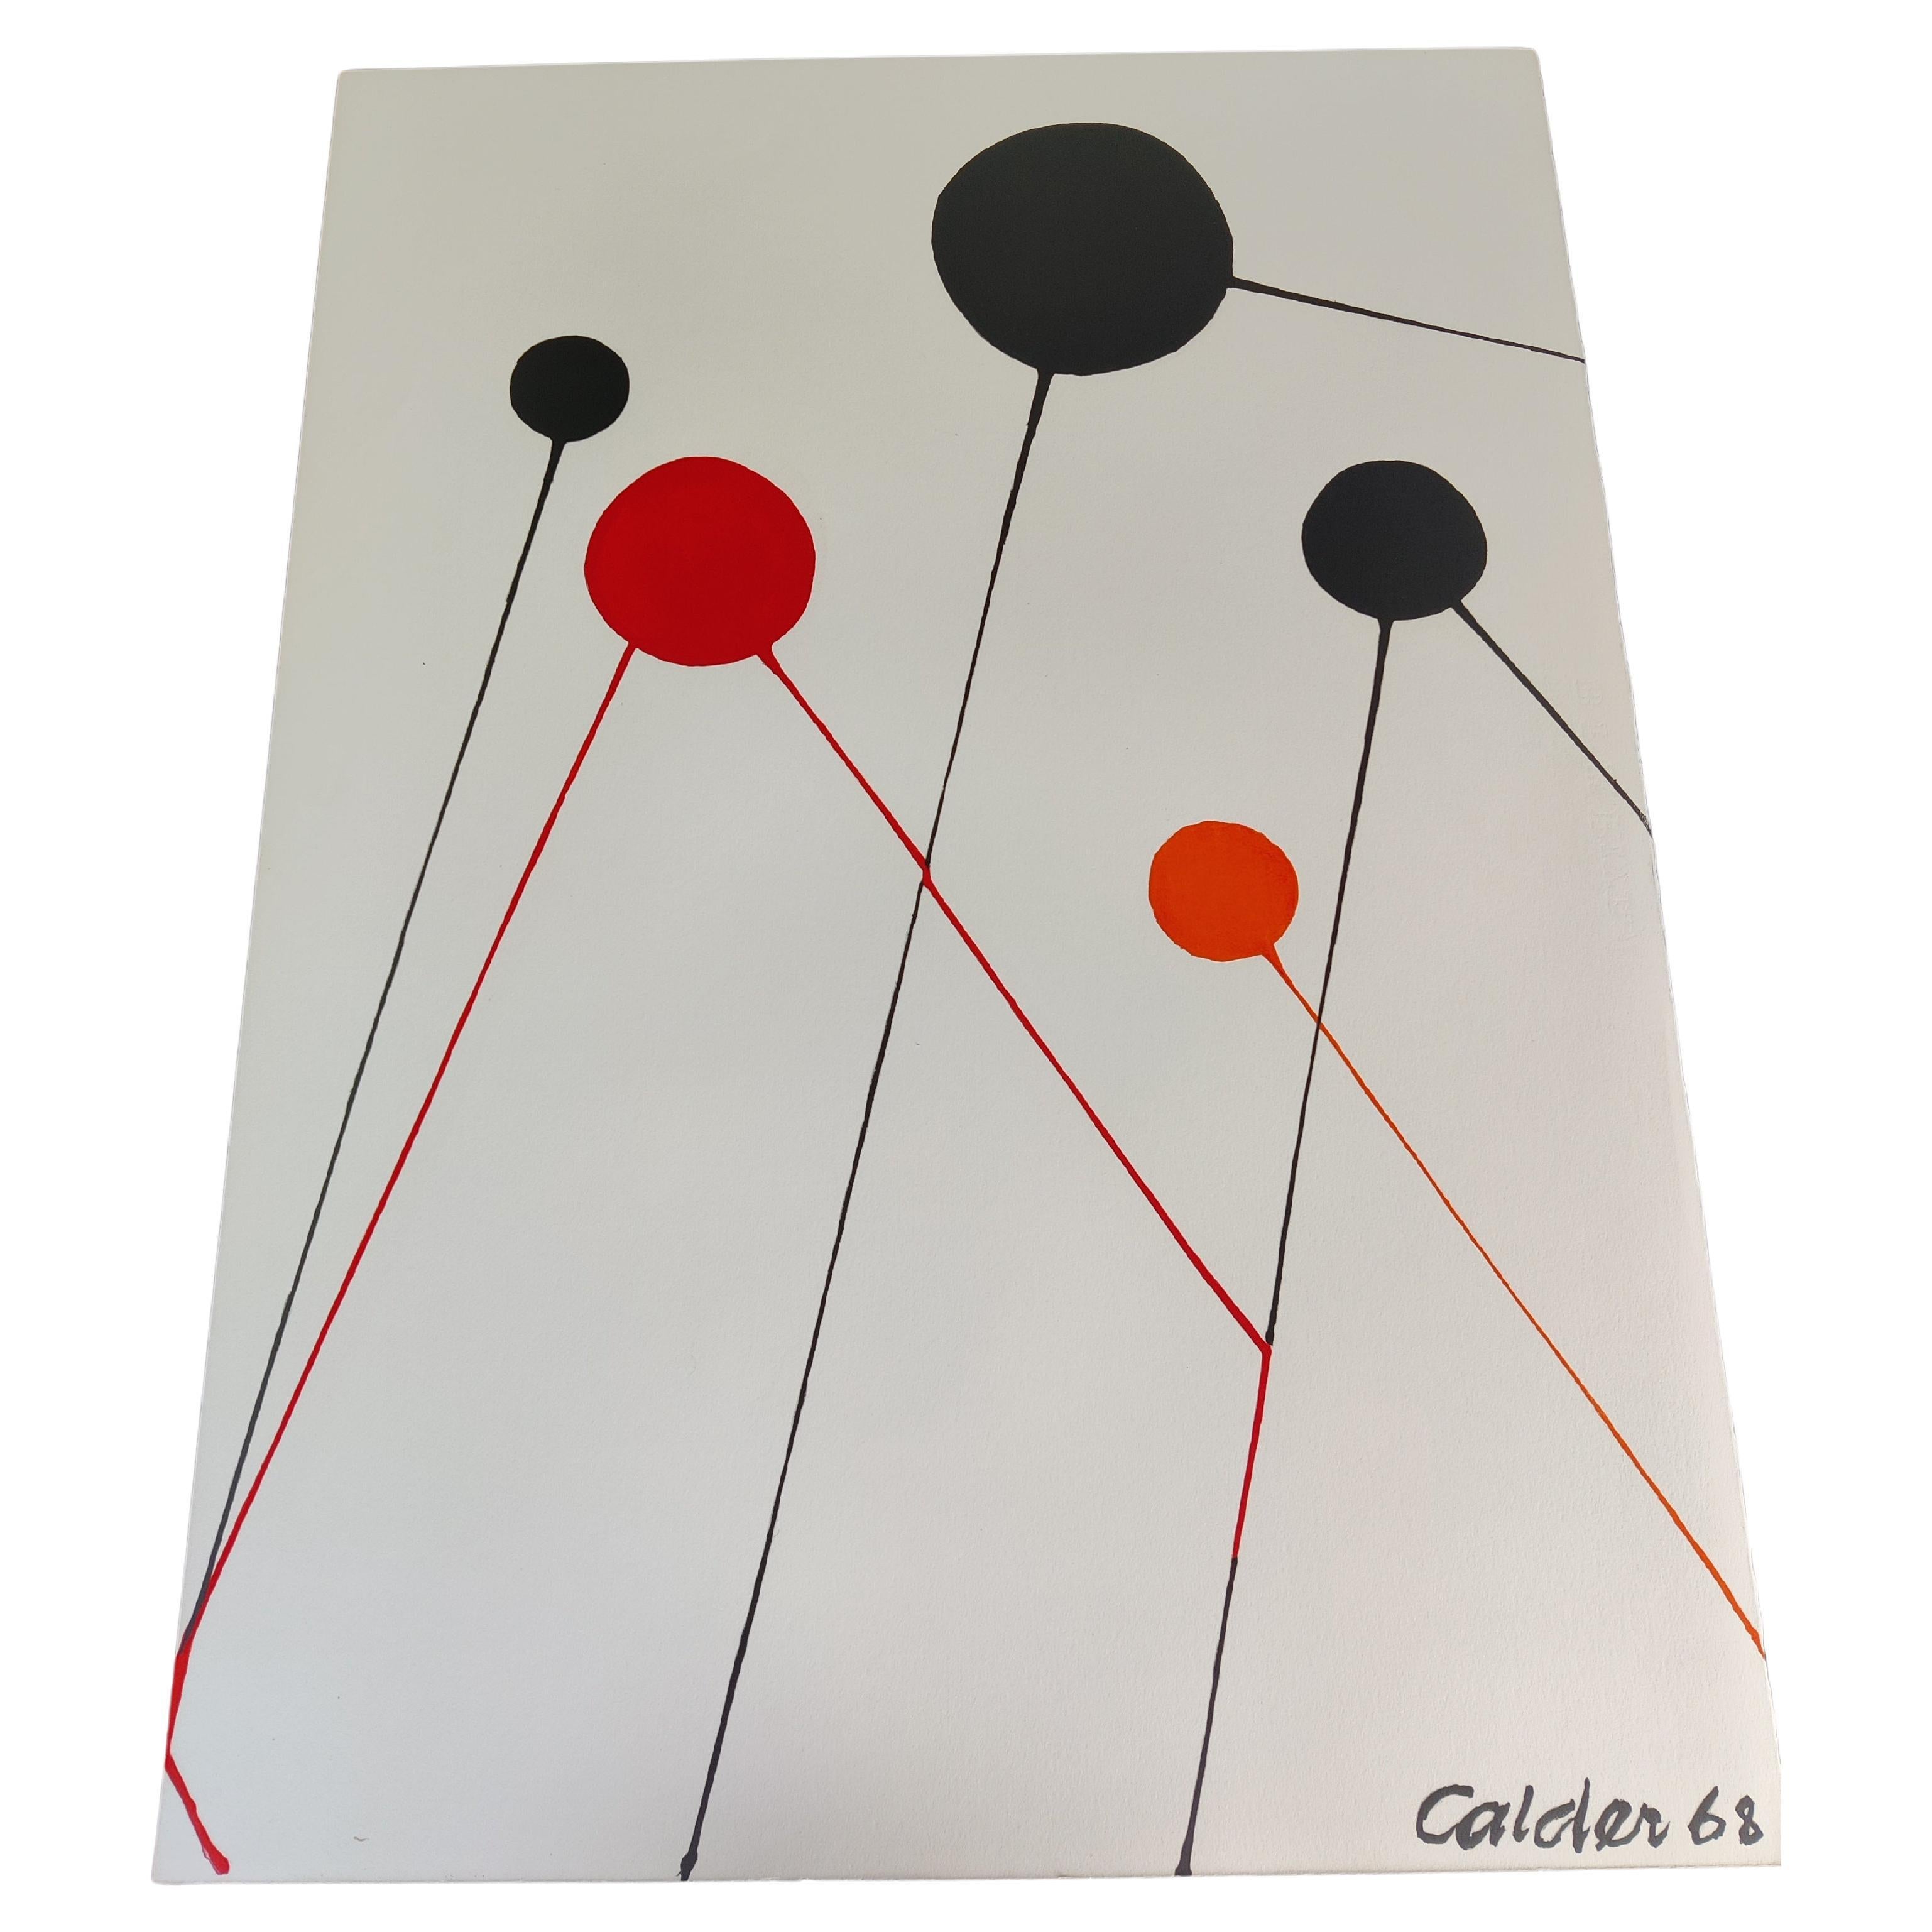 Alexander Calder 68 Lithograph Balloons For Sale